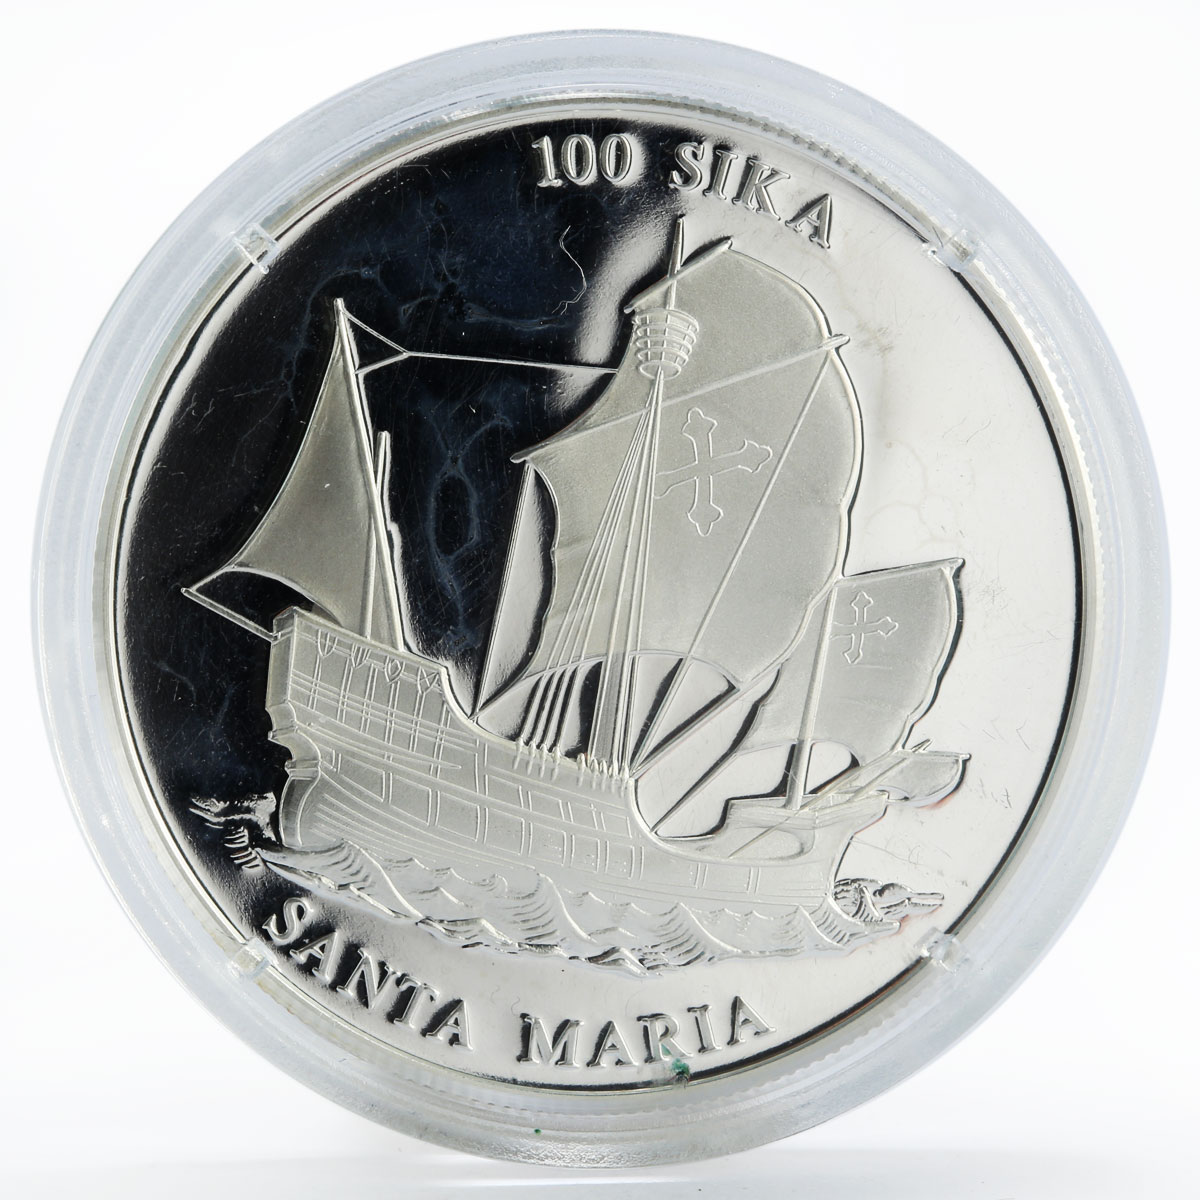 Ghana 100 sika Ship Santa Maria proof silver coin 2000